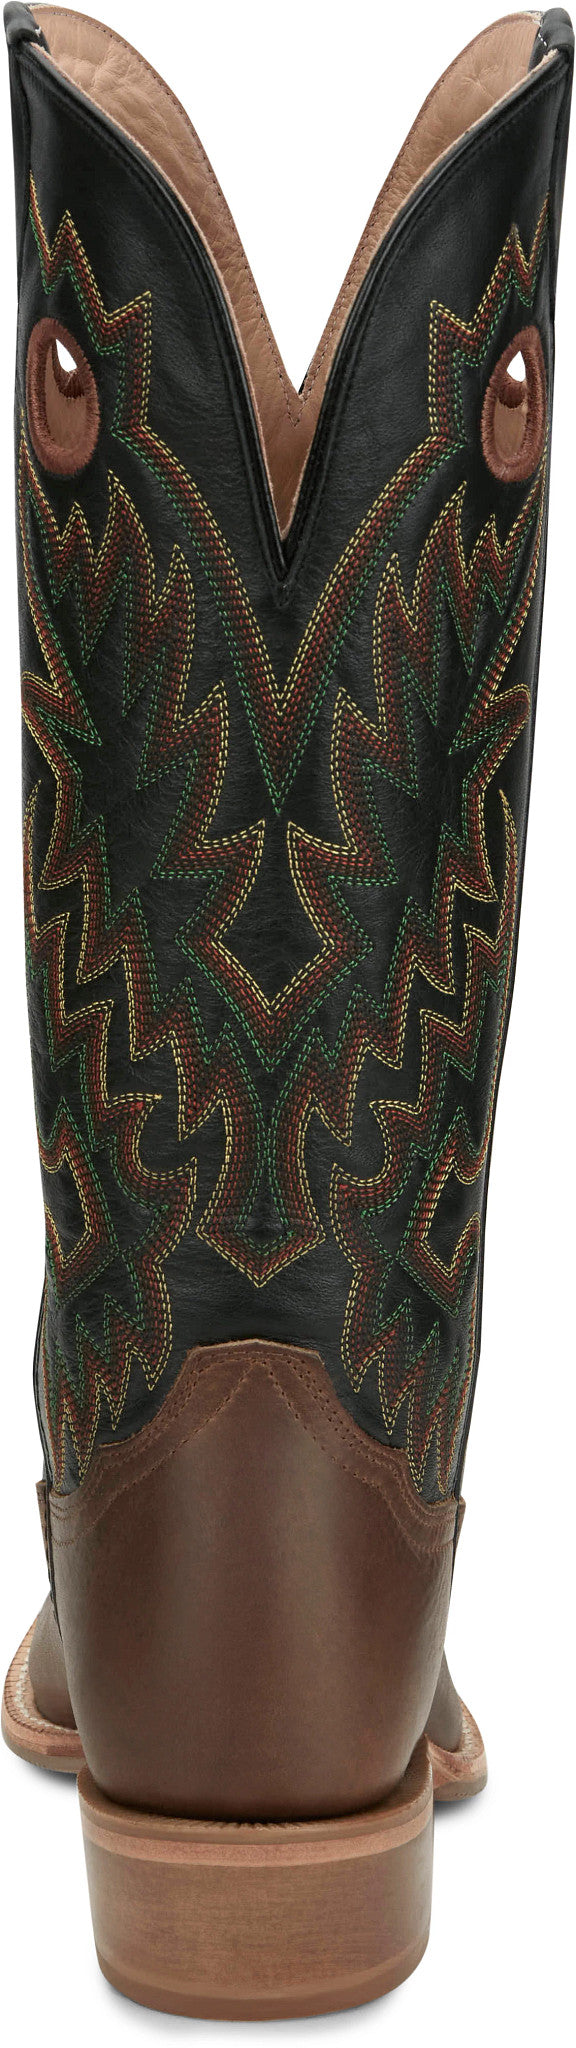 Tony Lama® Men's Rutledge Brown 15" Buckaroo Cowboy Boots